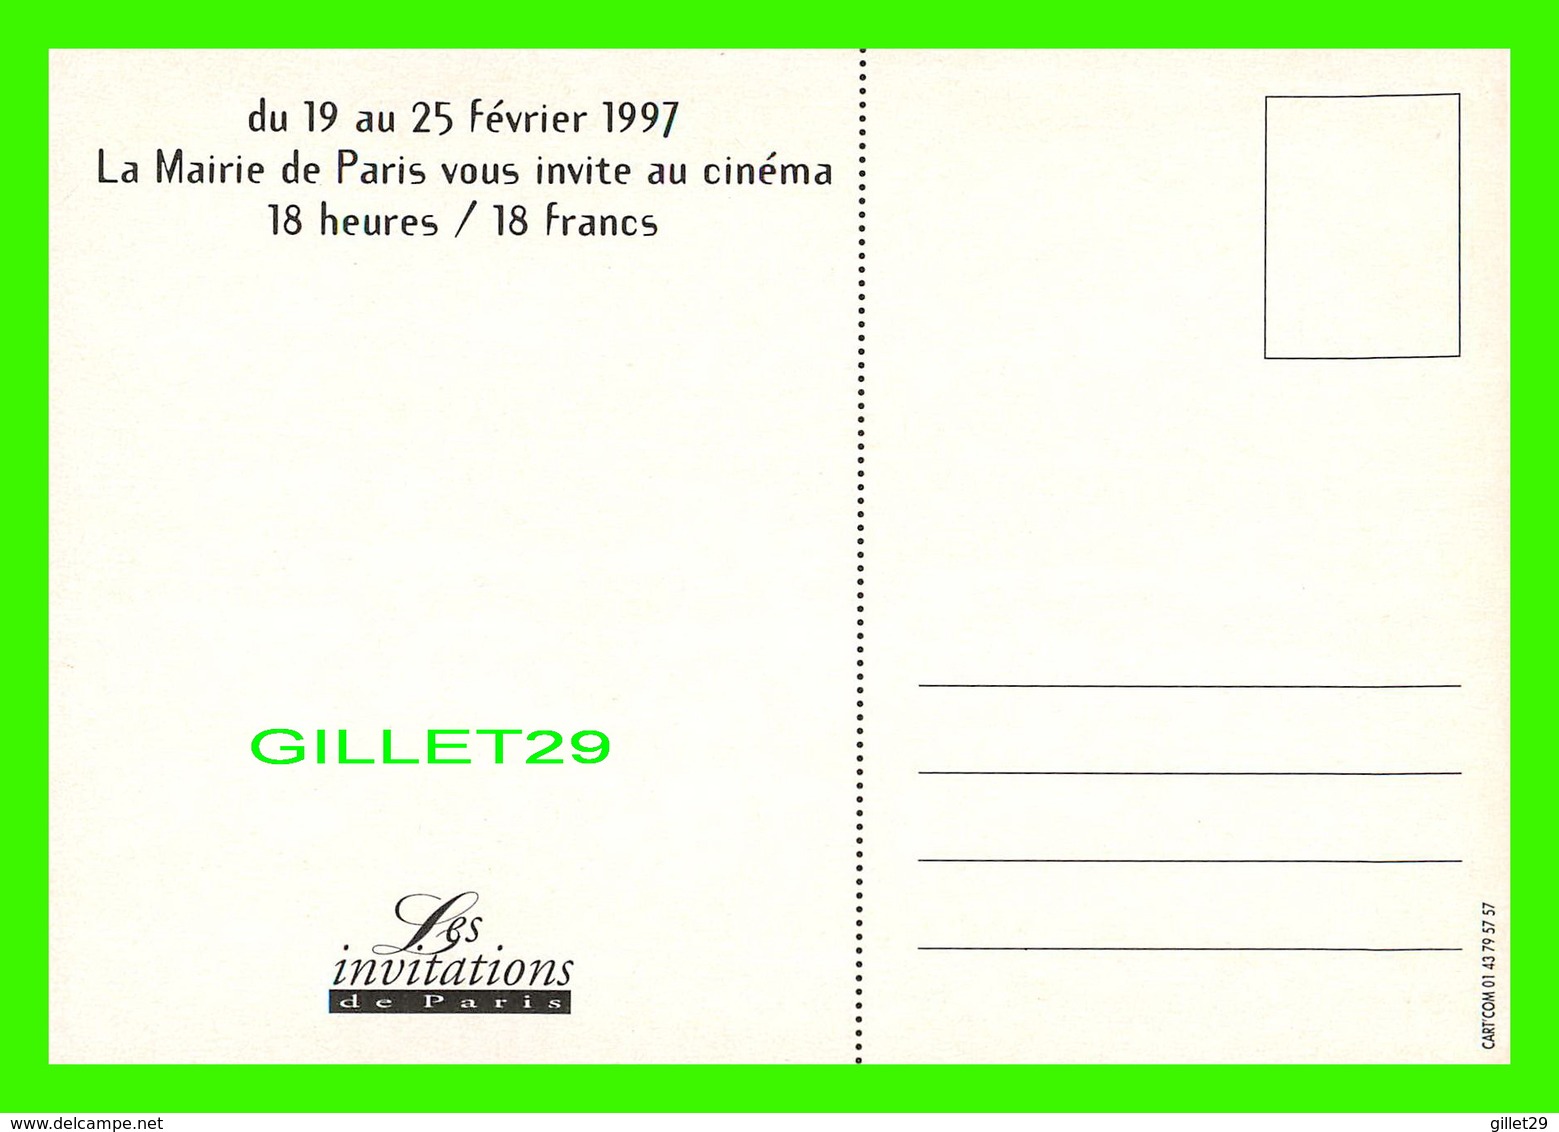 ADVERTISING - PUBLICITÉ -  LA MAIRIE DE PARIS VOUS INVITE AU CINÉMA 18 HEURES / 18 FRANCS EN 1997 - - Publicité